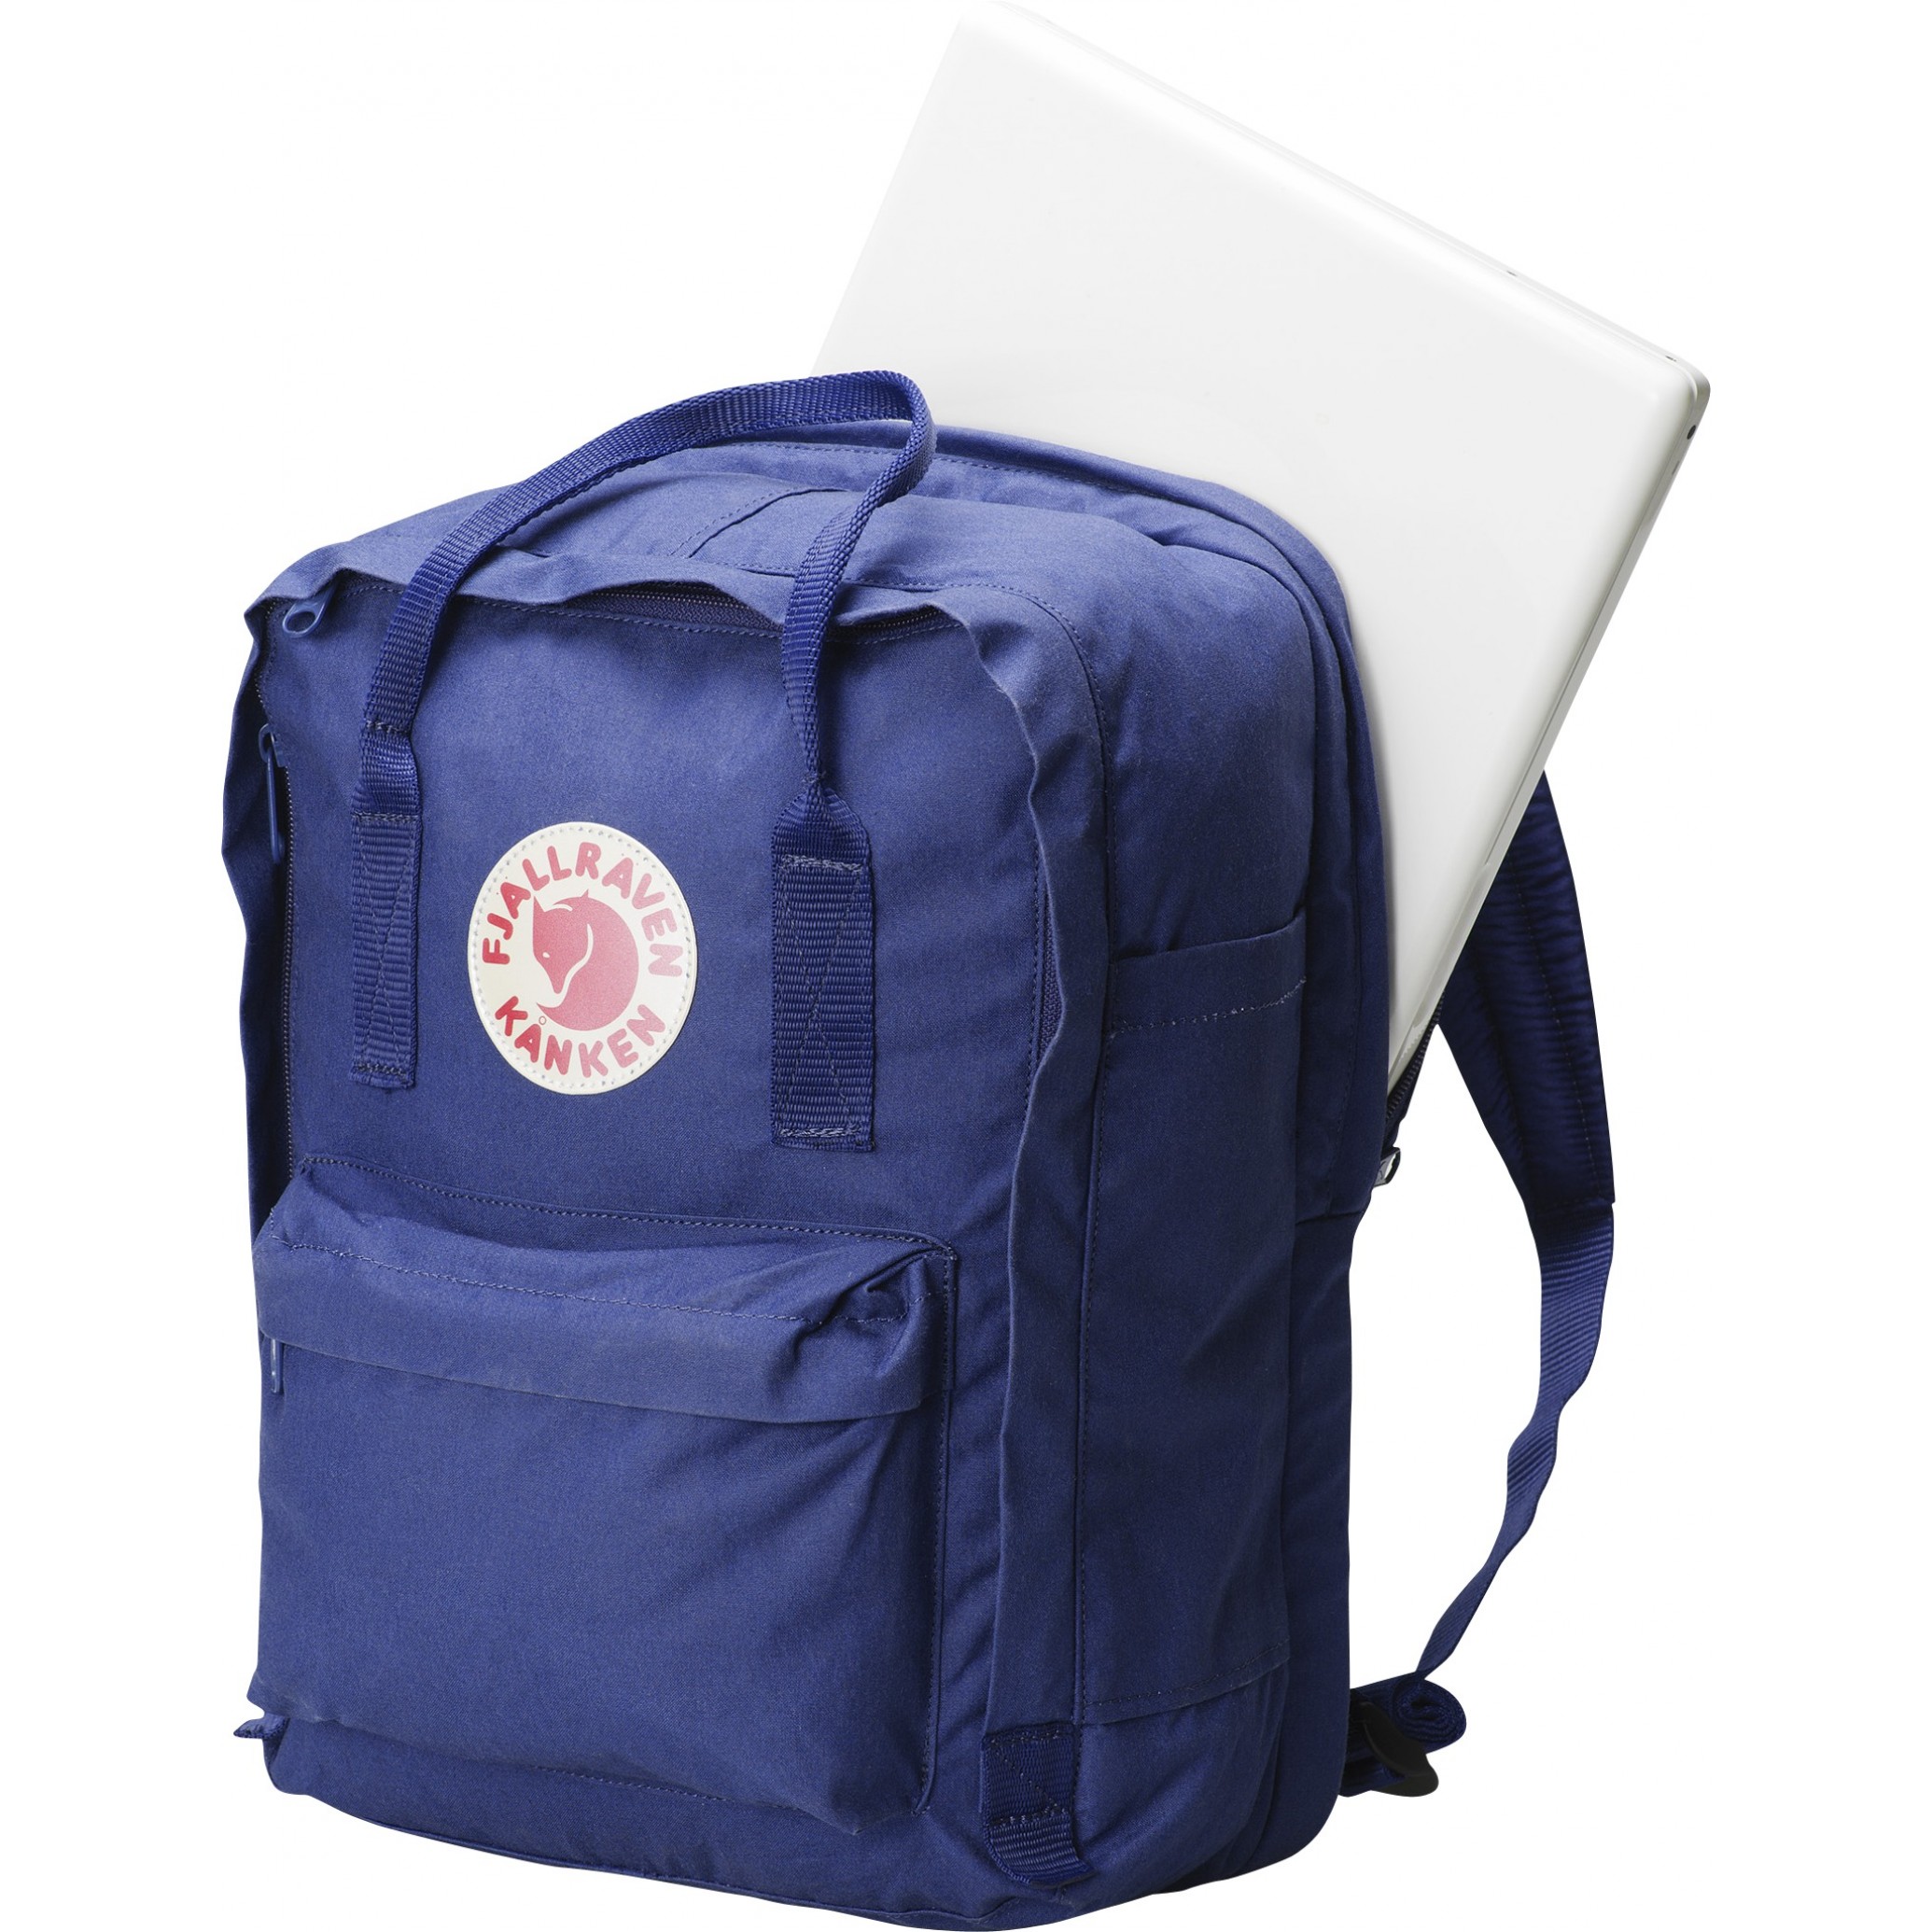 kanken laptop backpack